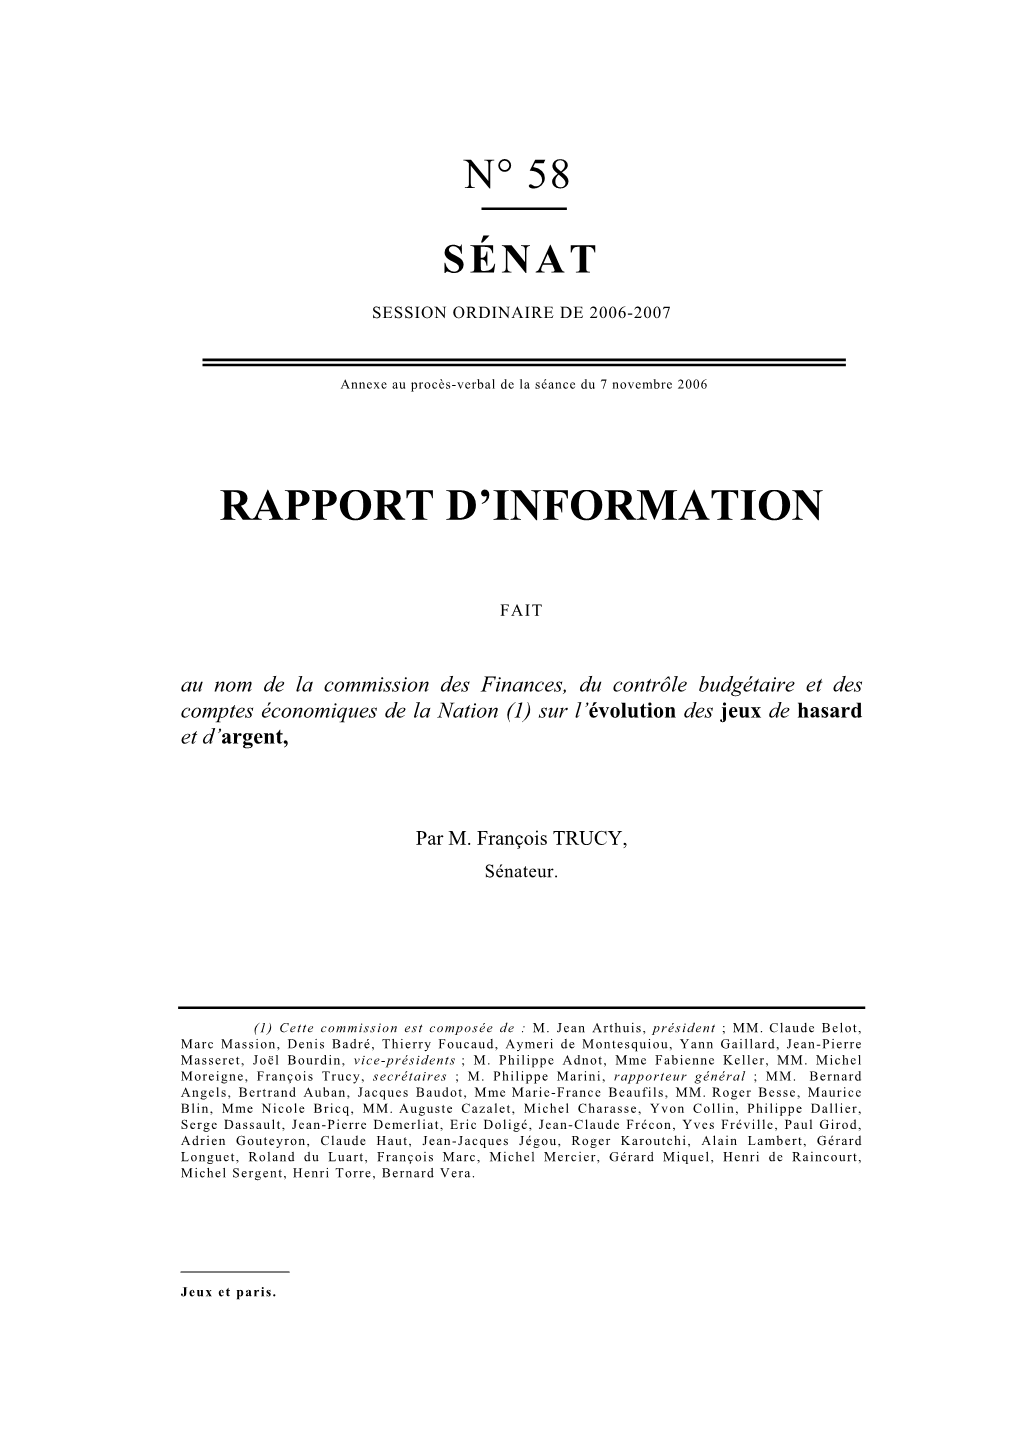 Rapport D'information De M